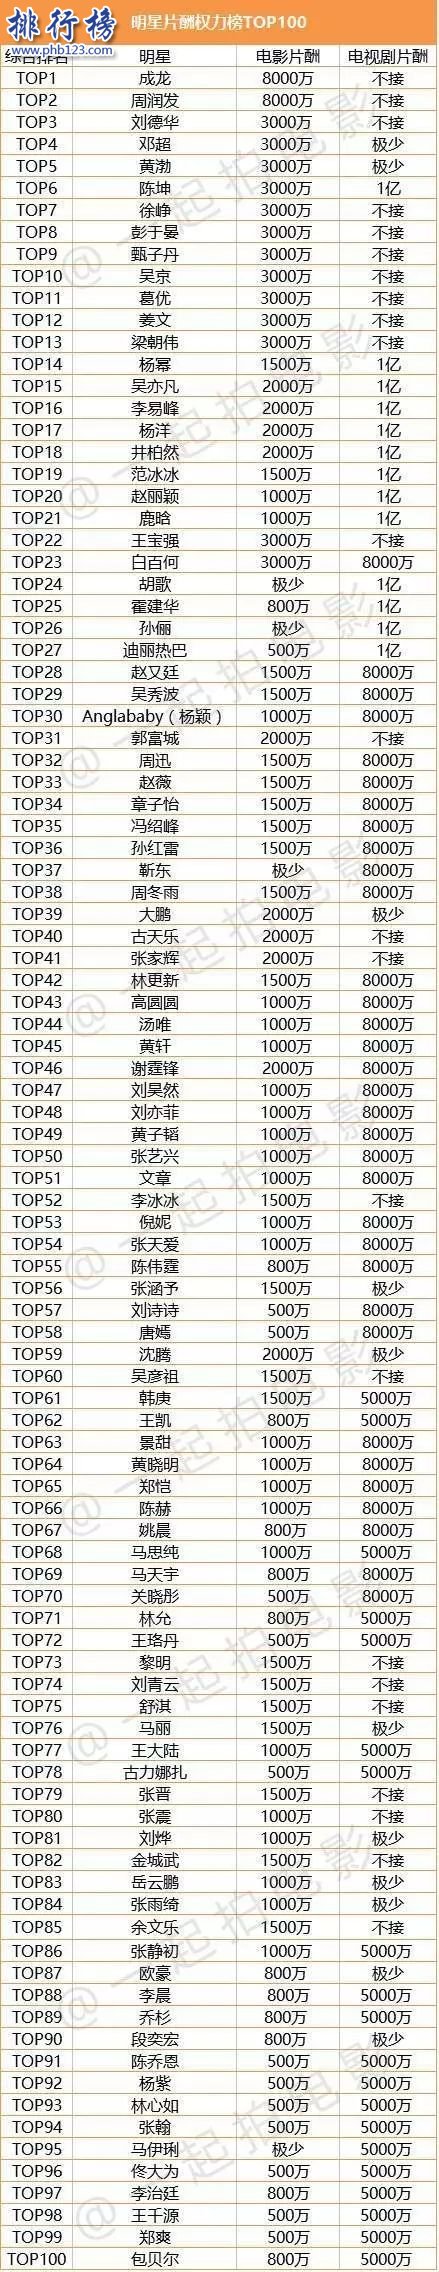 2017中国演员片酬排行Top100:成龙8000万夺冠,杨幂女演员第一